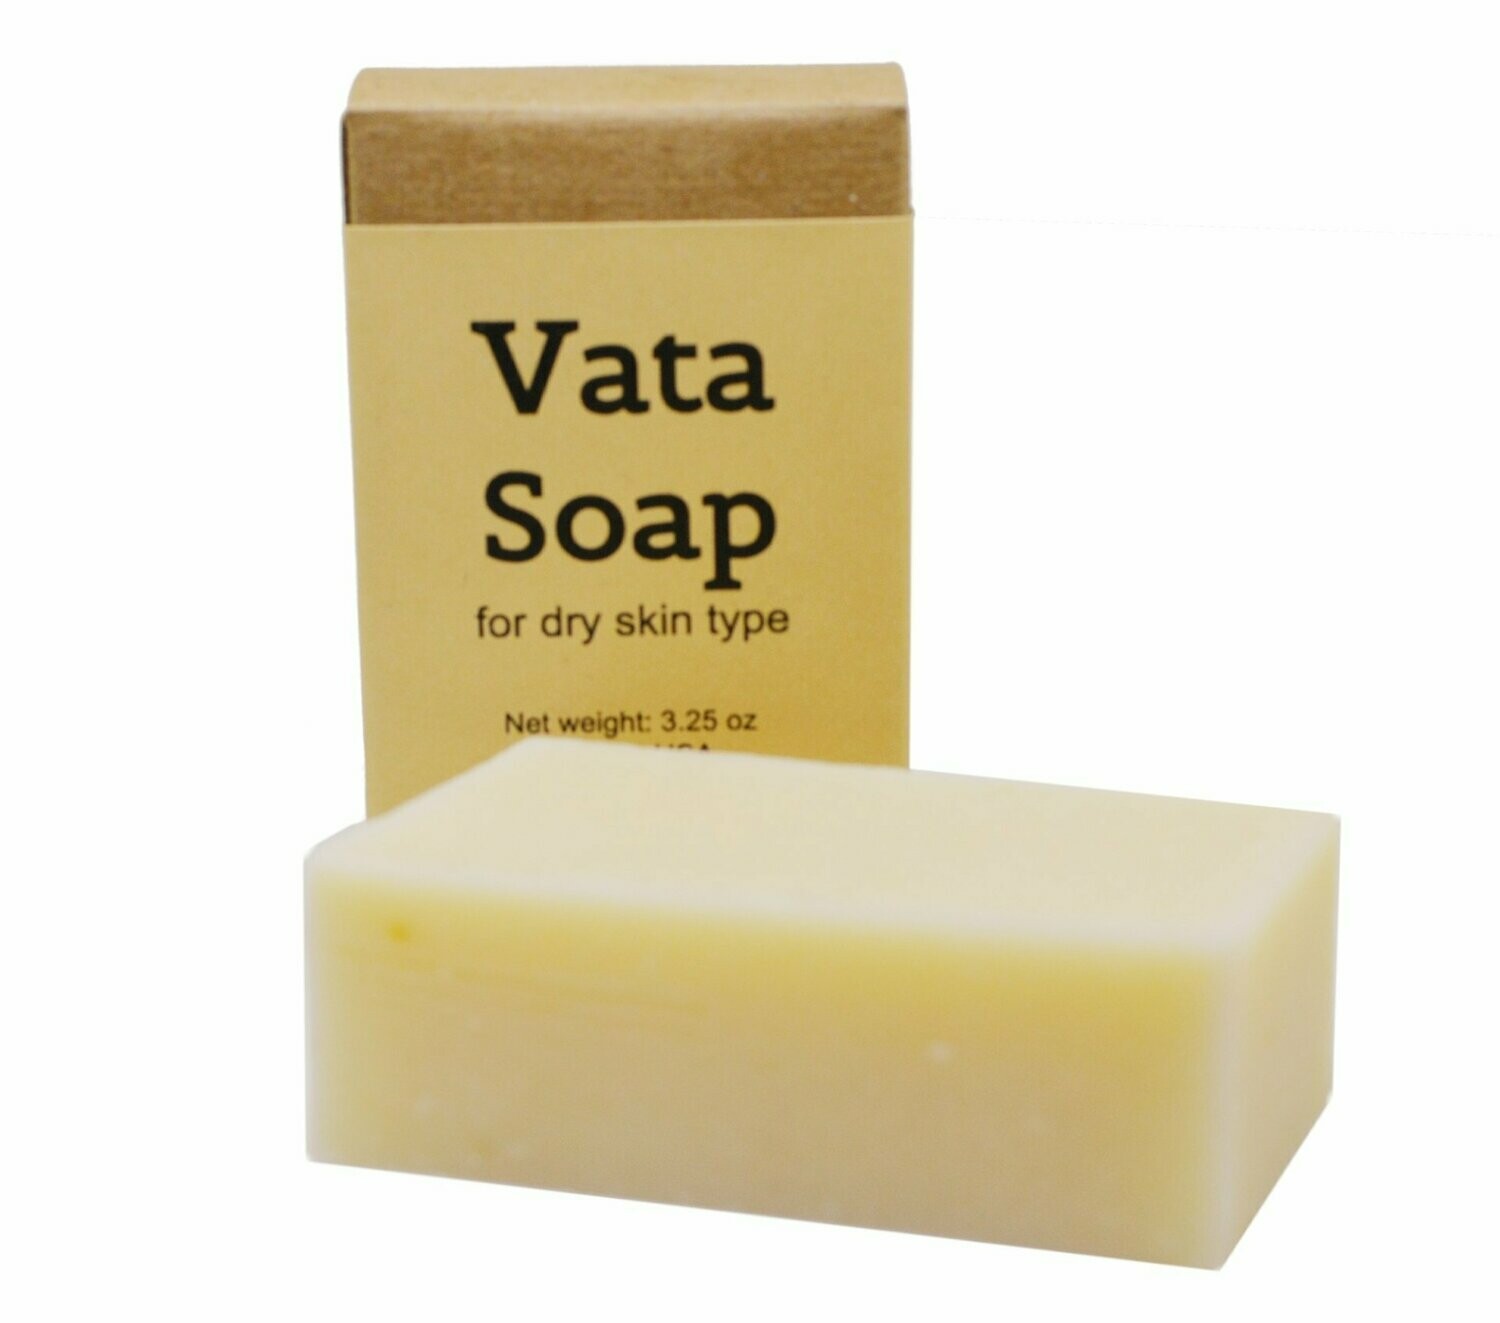 Vata Soap